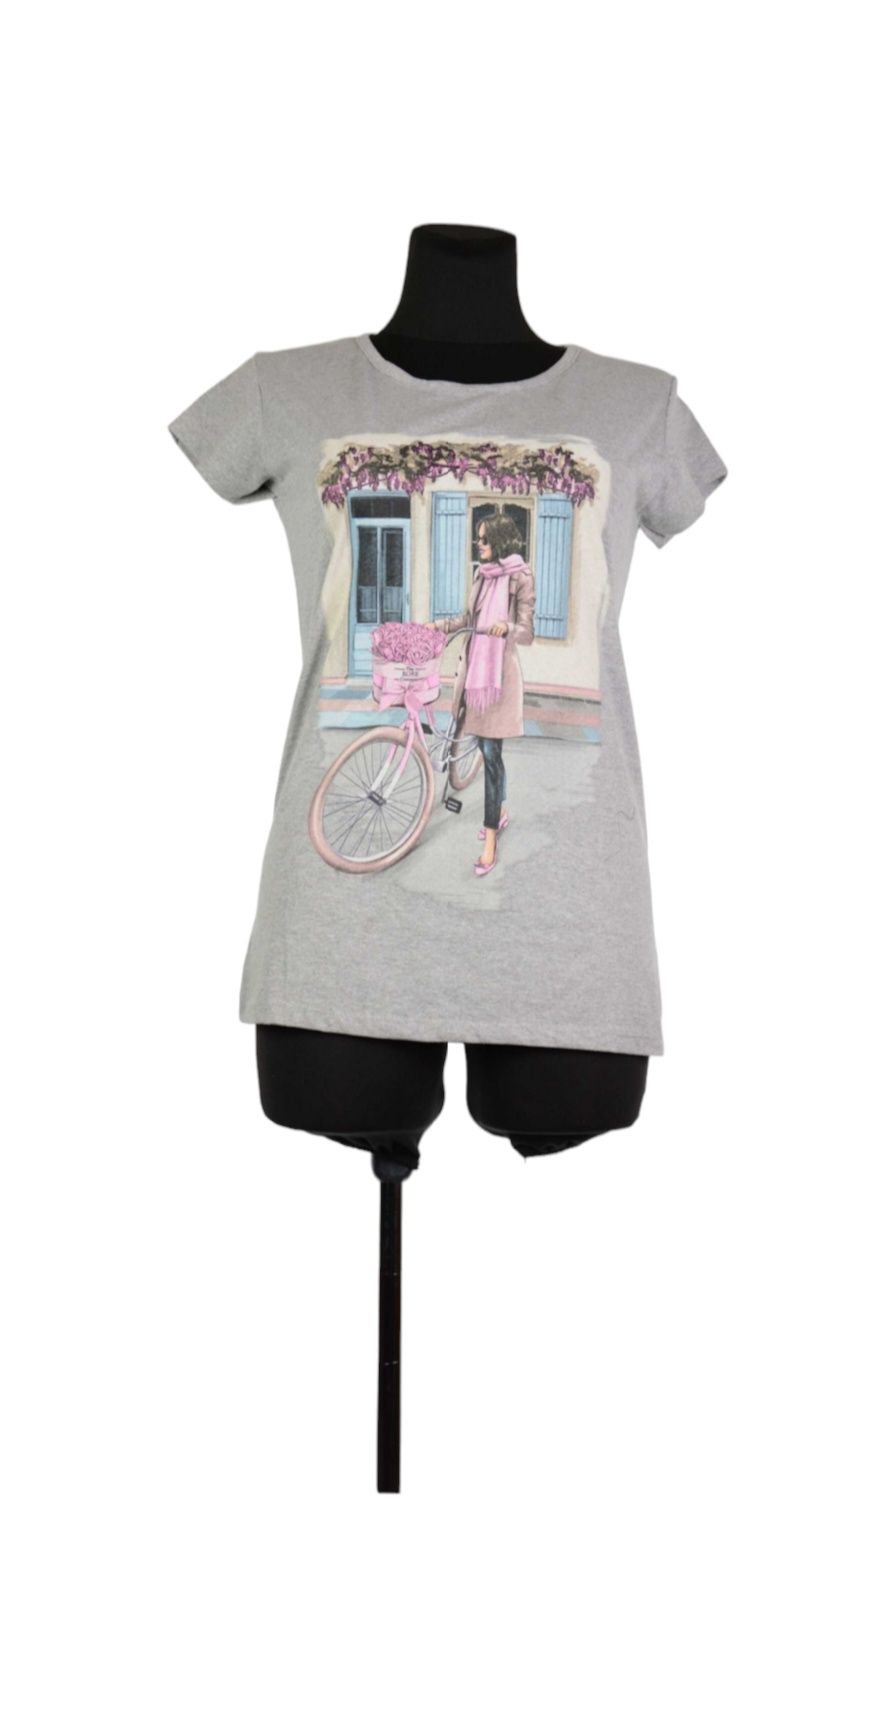 Bluzka damska, krótki rękaw, kobieta z rowerem, szara, rozmiar L